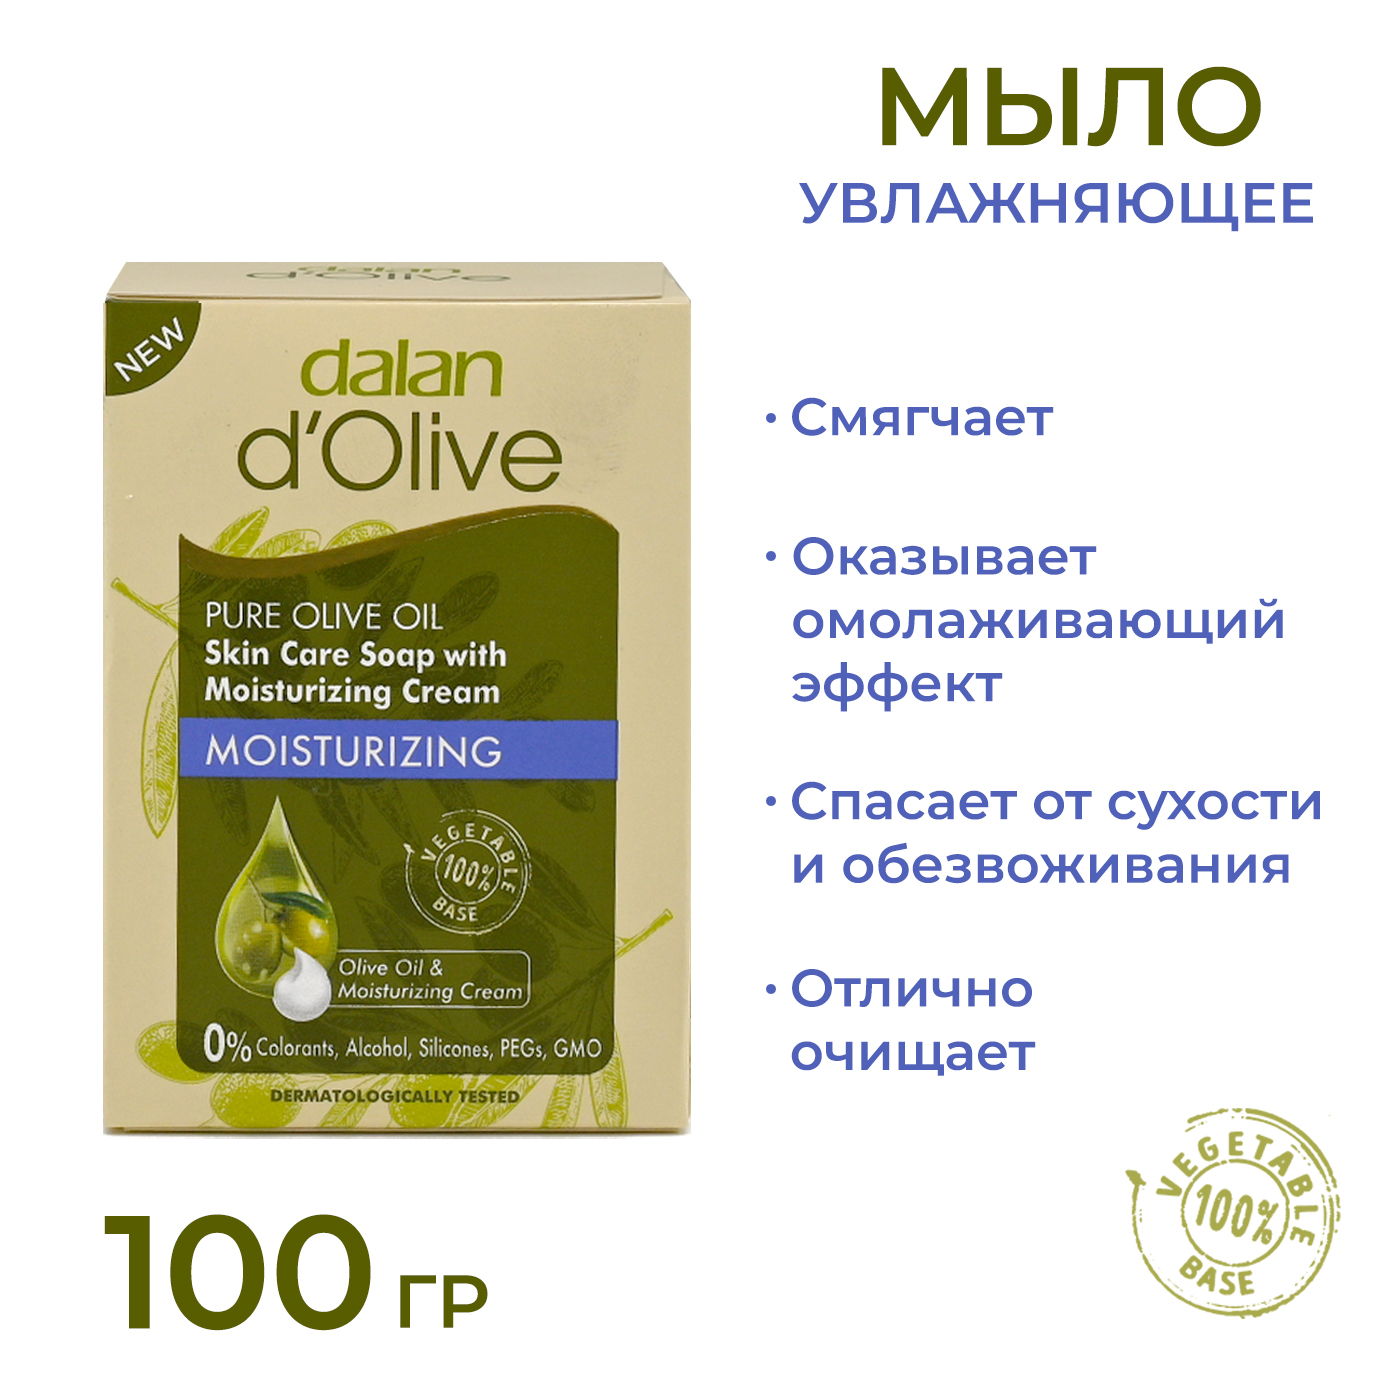 Мыло кусковое Dalan d'Olive Увлажняющее с кремом, 100 г мыло кусковое dalan d olive питательное натуральное 200 г